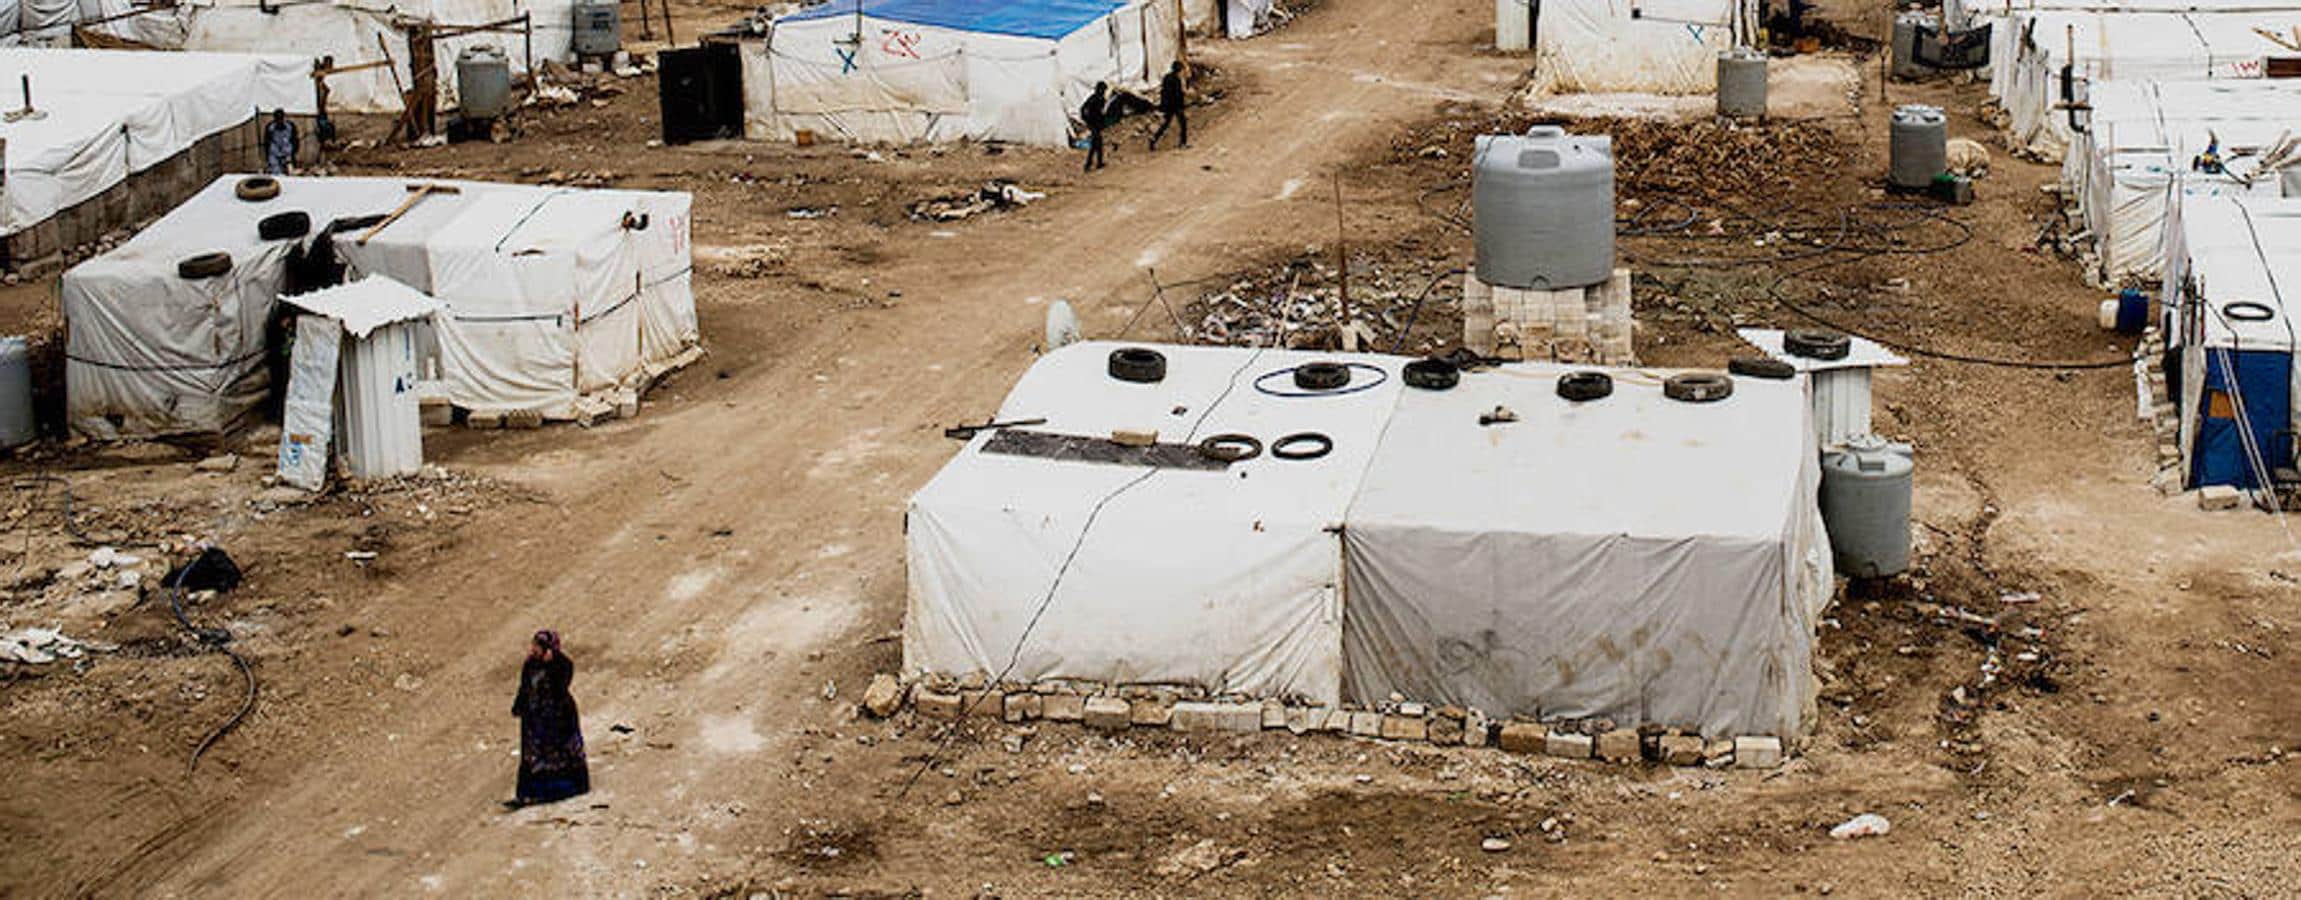 Aunque lo parezca no es la foto de un campo de refugiados. Más de un millón de sirios viven en los 4.164 asentamientos informales que se extienden en Líbano. Pagan un “alquiler” al propietario de estas tierras por estar en ellas. Para poder hacerlo, en 2016, han recurrido a mecanismos extremos como el trabajo infantil o regímenes de esclavitud. Sin siquiera estatuto de refugiados (Líbano no firmó el Convenio sobre Refugiados de 1951) su acceso a la educación y la sanidad no está garantizado. Tienen limitados su libertad de movimientos y acceso al trabajo. El invierno de 2016 fue especialmente duro en el valle del Bekaa: la nieve amenazaba con hundir los techos de las tiendas y las mujeres arrojaban a las estufas hasta sus zapatos para calentarse en las noches más gélidas.